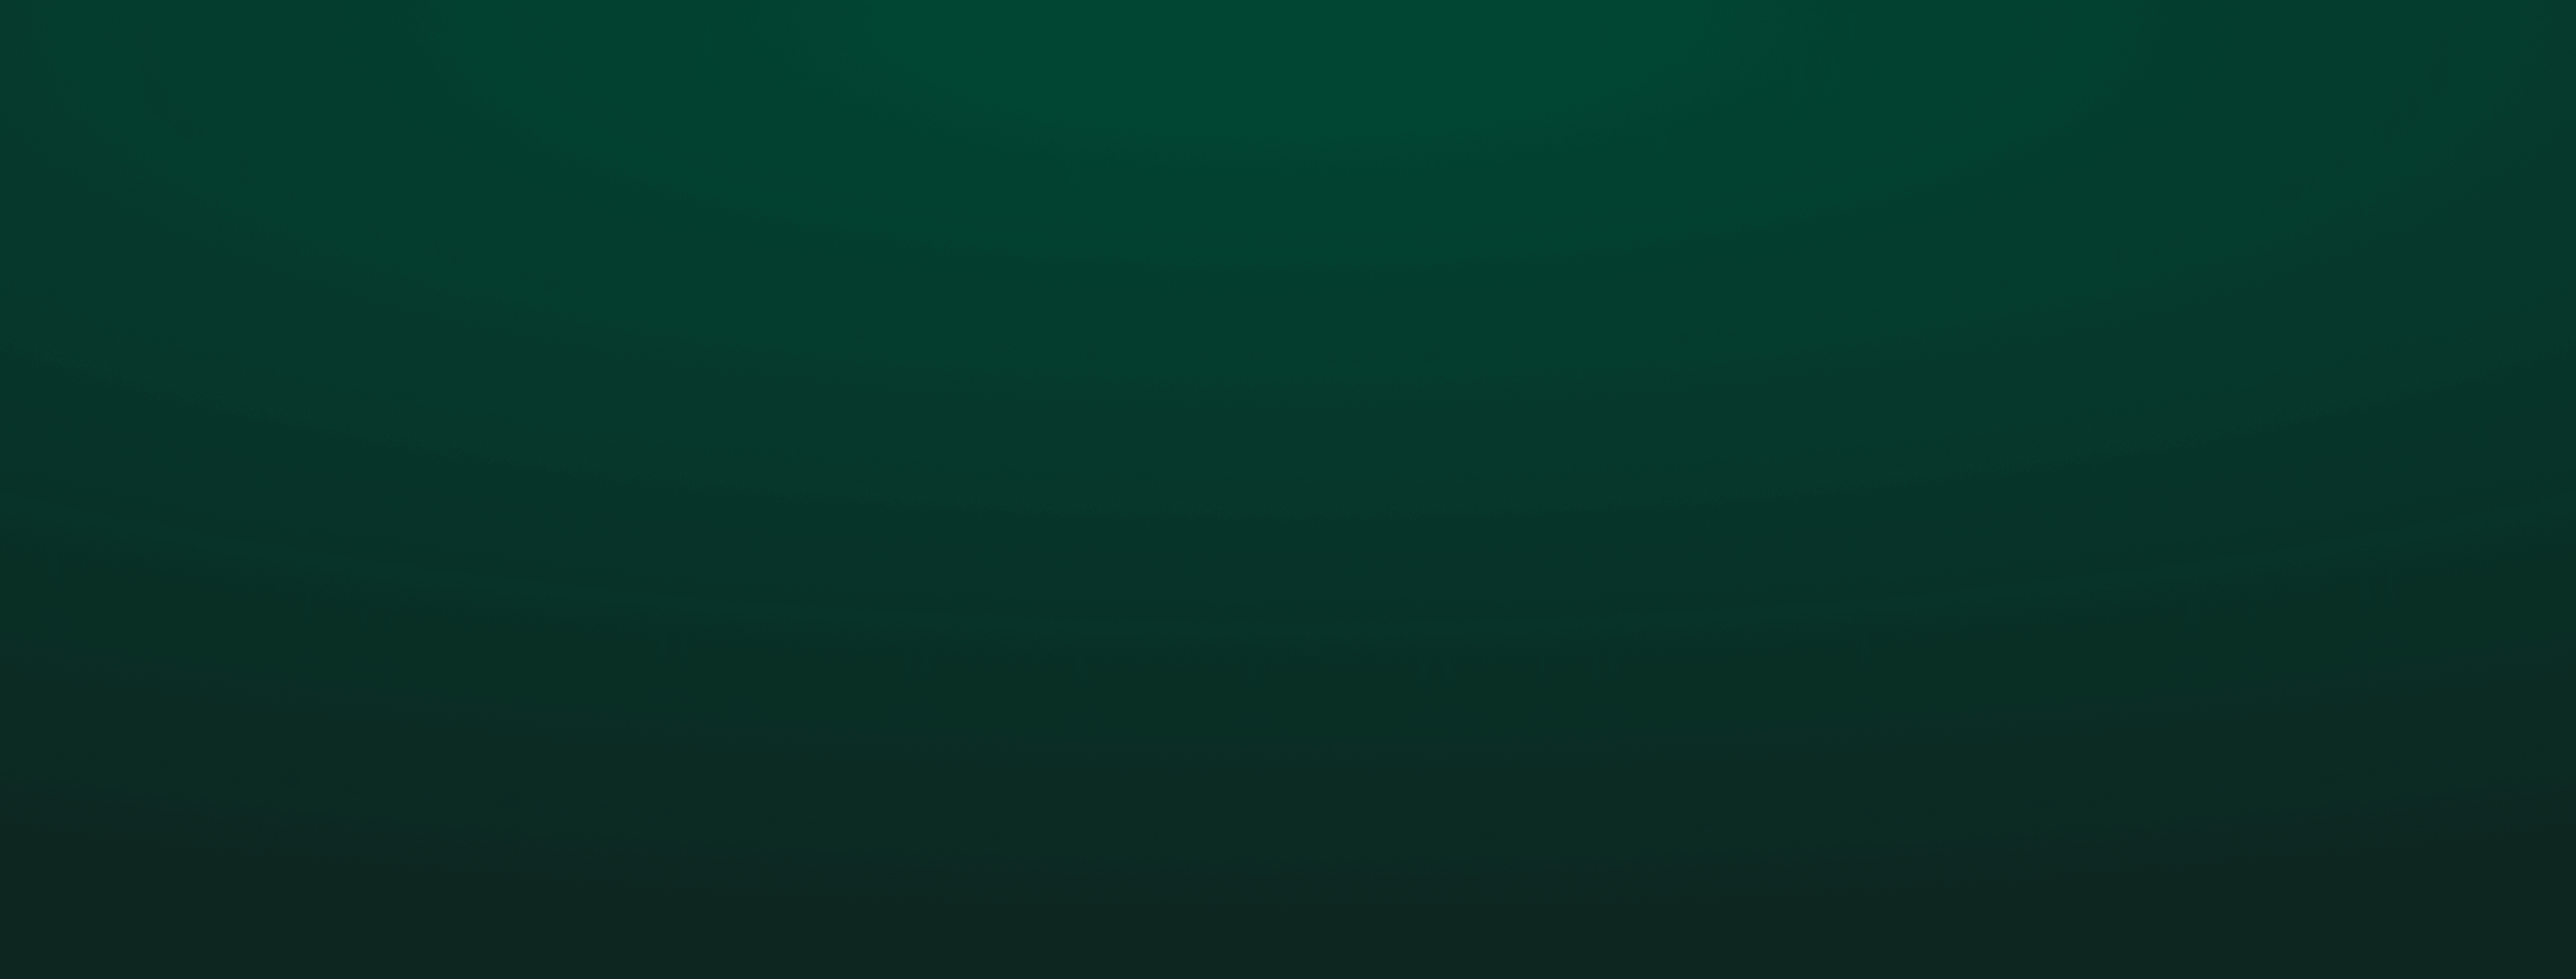 Ein dunkelgrüner Hintergrund.